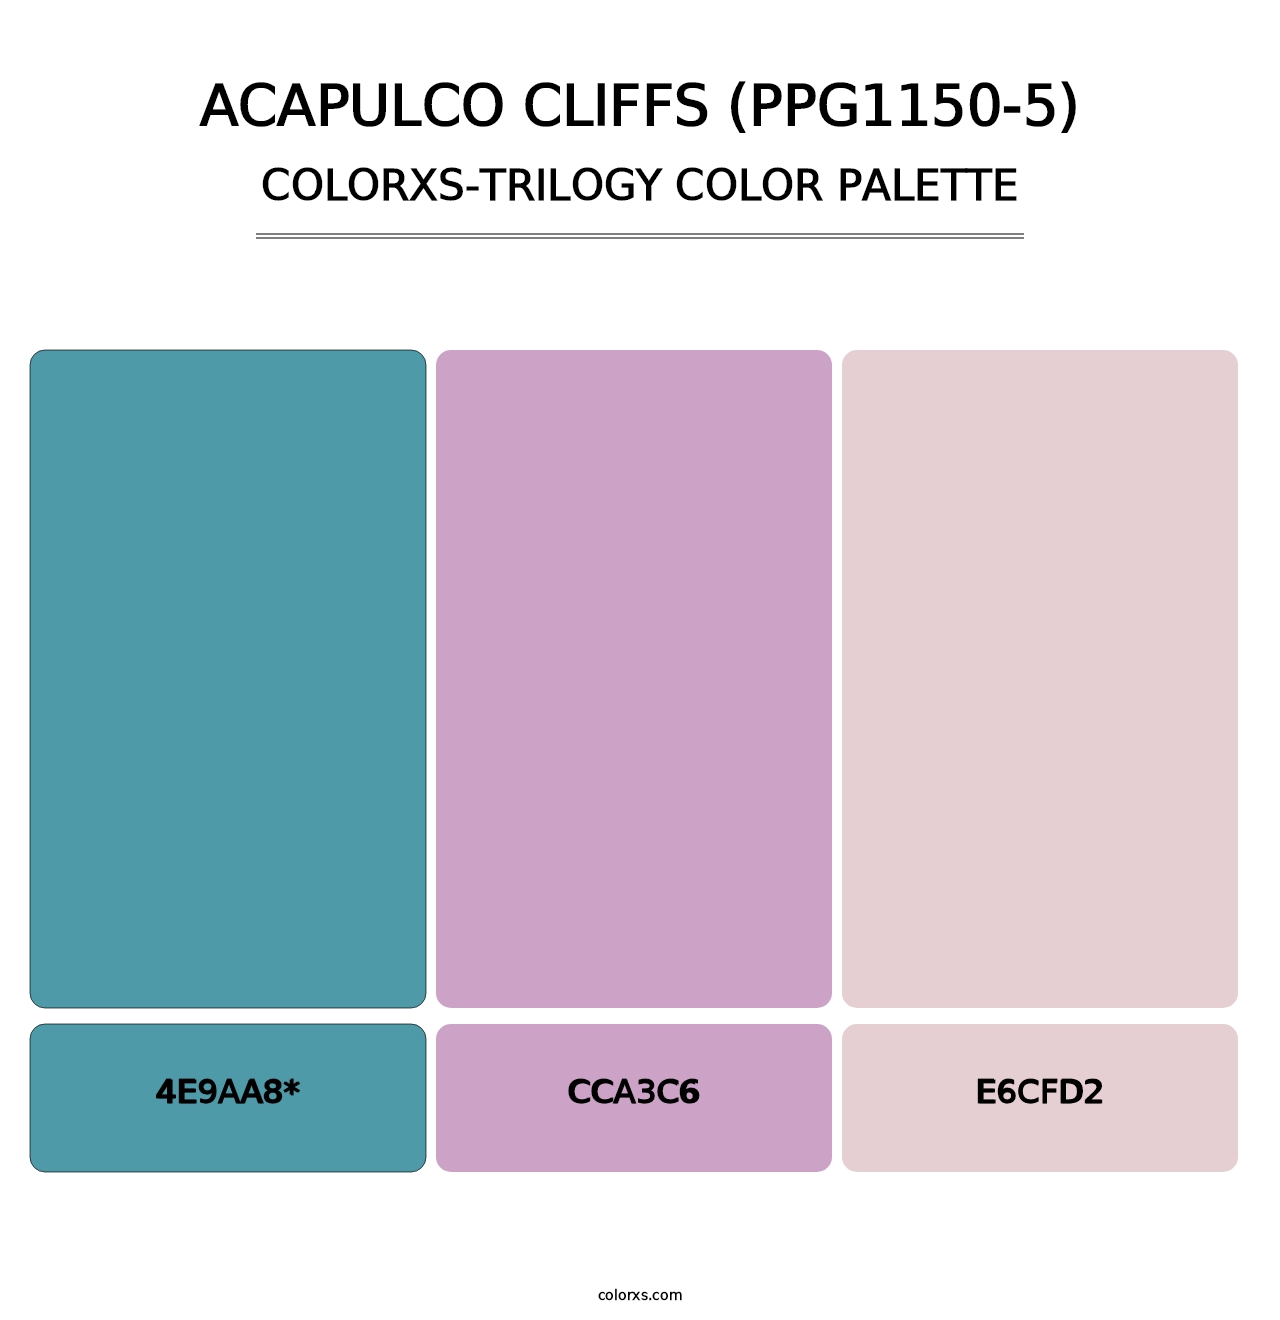 Acapulco Cliffs (PPG1150-5) - Colorxs Trilogy Palette